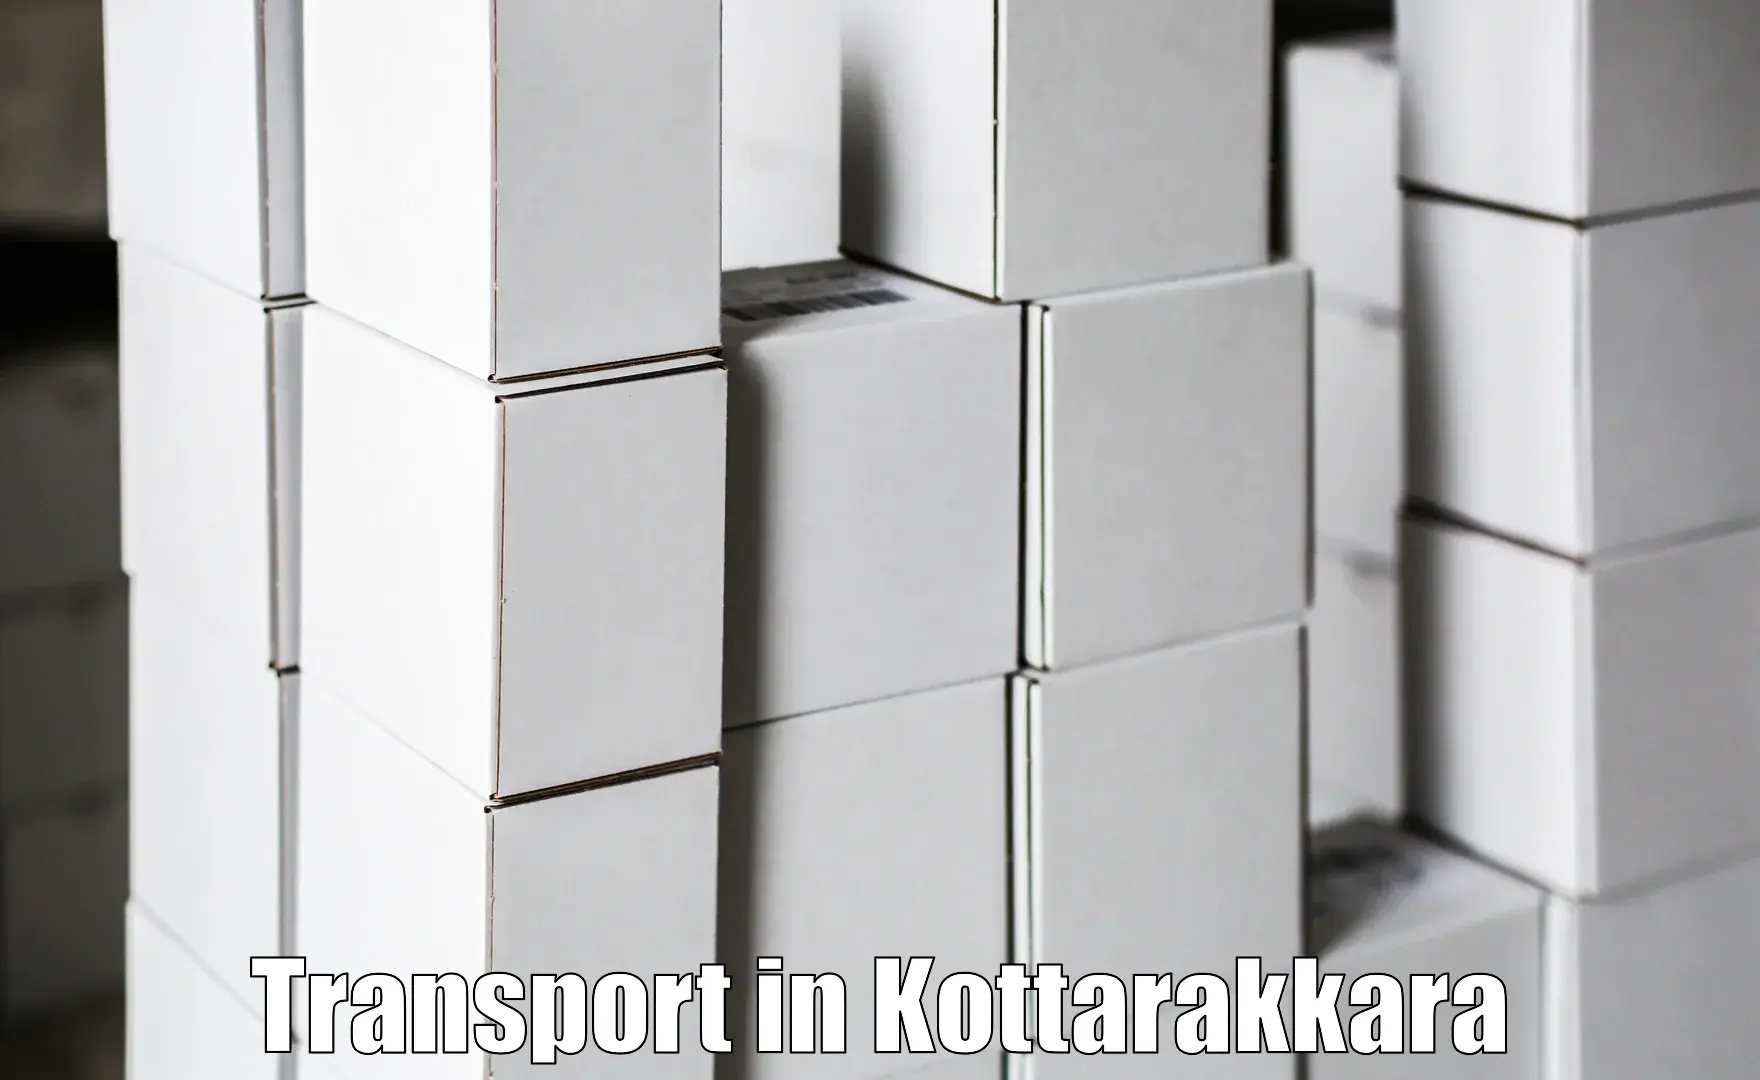 Shipping partner in Kottarakkara